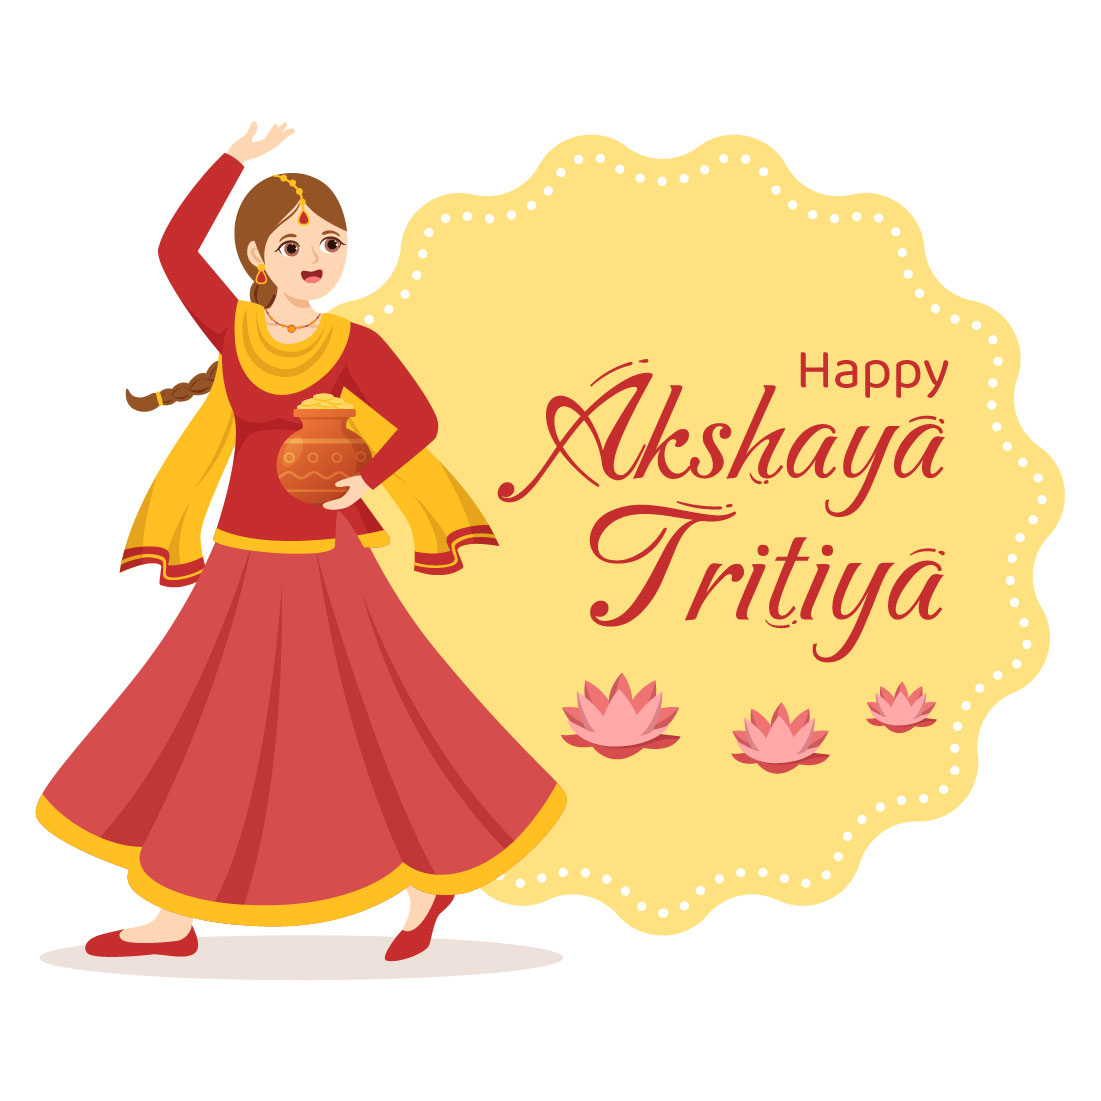 16 Akshaya Tritiya Festival Illustration preview image.